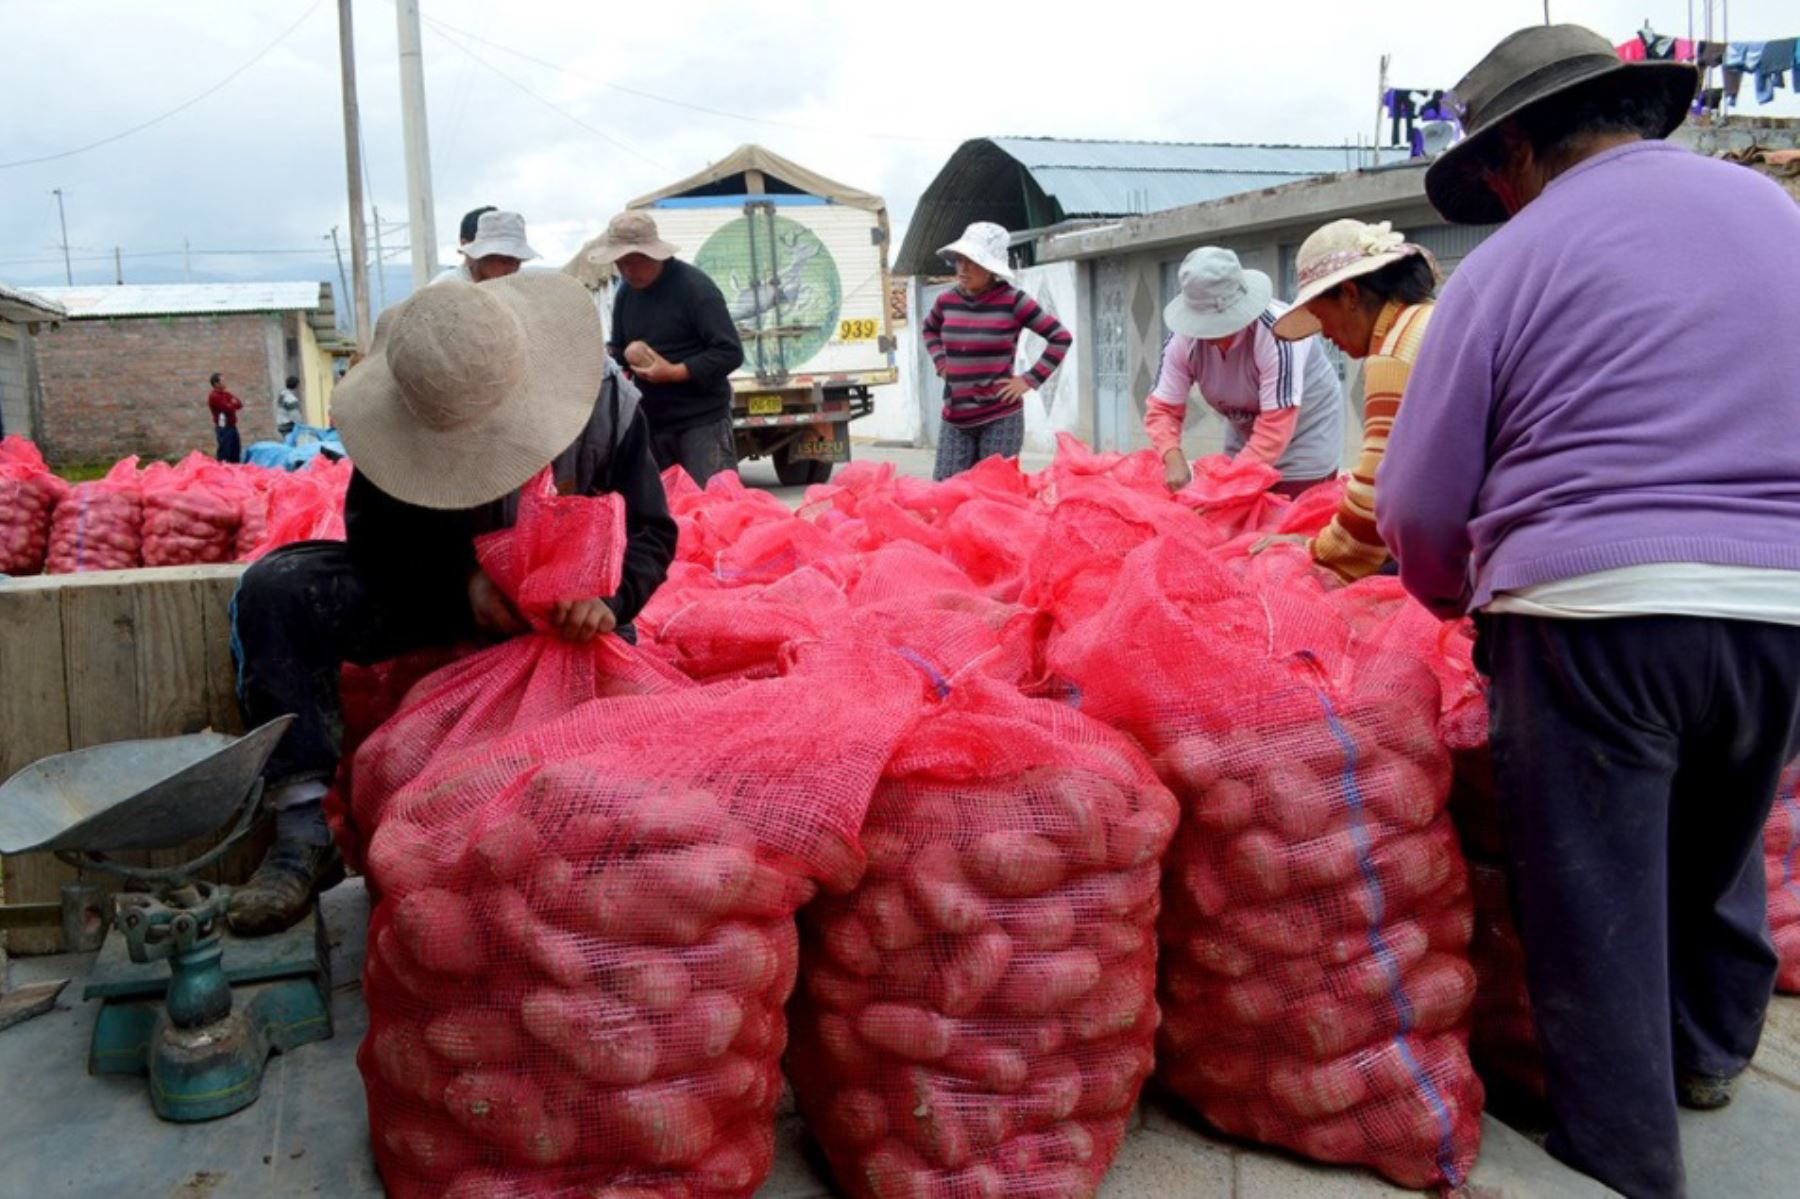 Más de 3,500 agricultores de las provincias cajamarquinas de Cutervo, Chota y Hualgayoc fueron empadronados por la Dirección Regional de Agricultura de Cajamarca, para adquirir 3,000 toneladas de papa excedentes en la última campaña de cosecha.